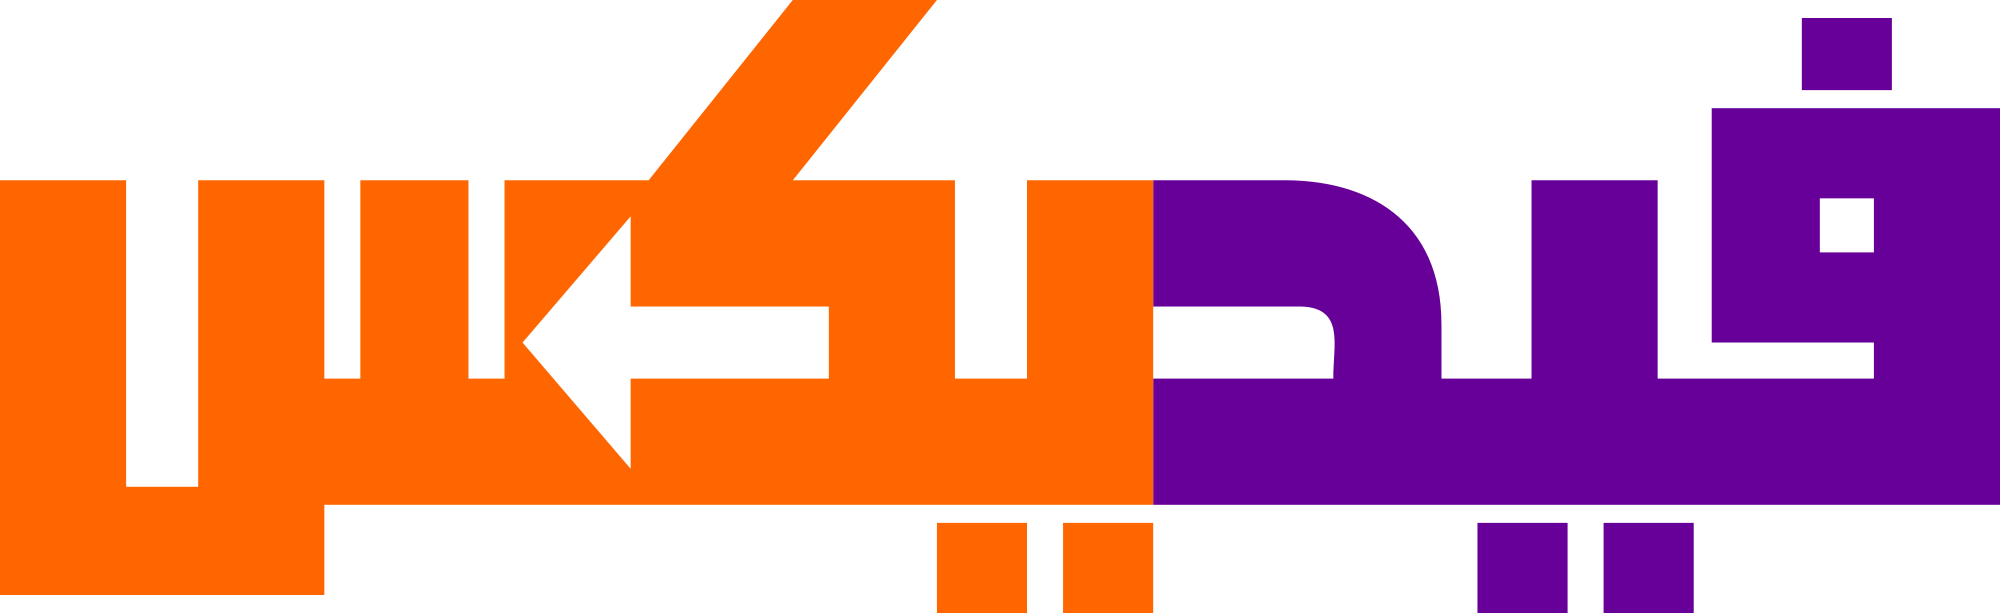 Open - Fedex Arabic Logo (2000x613)